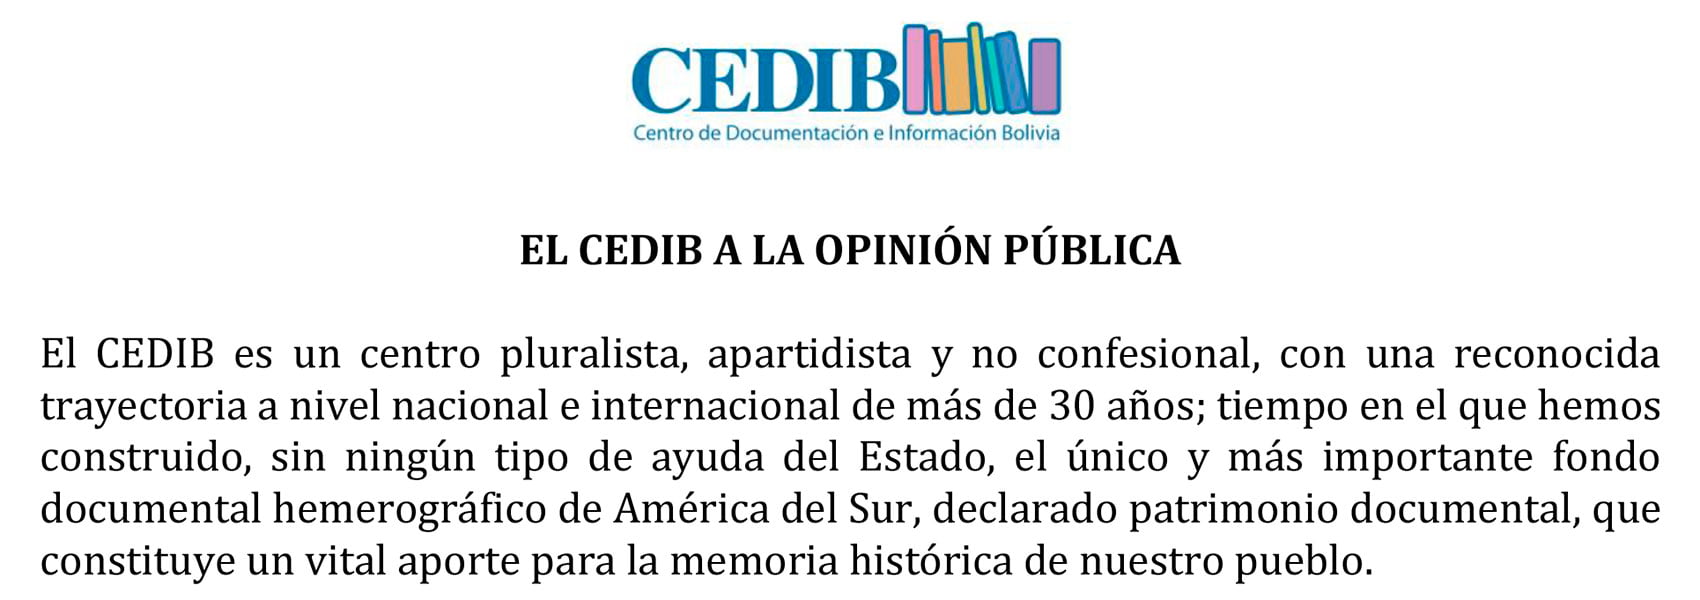 El CEDIB a la opinión pública (10.08.2015)